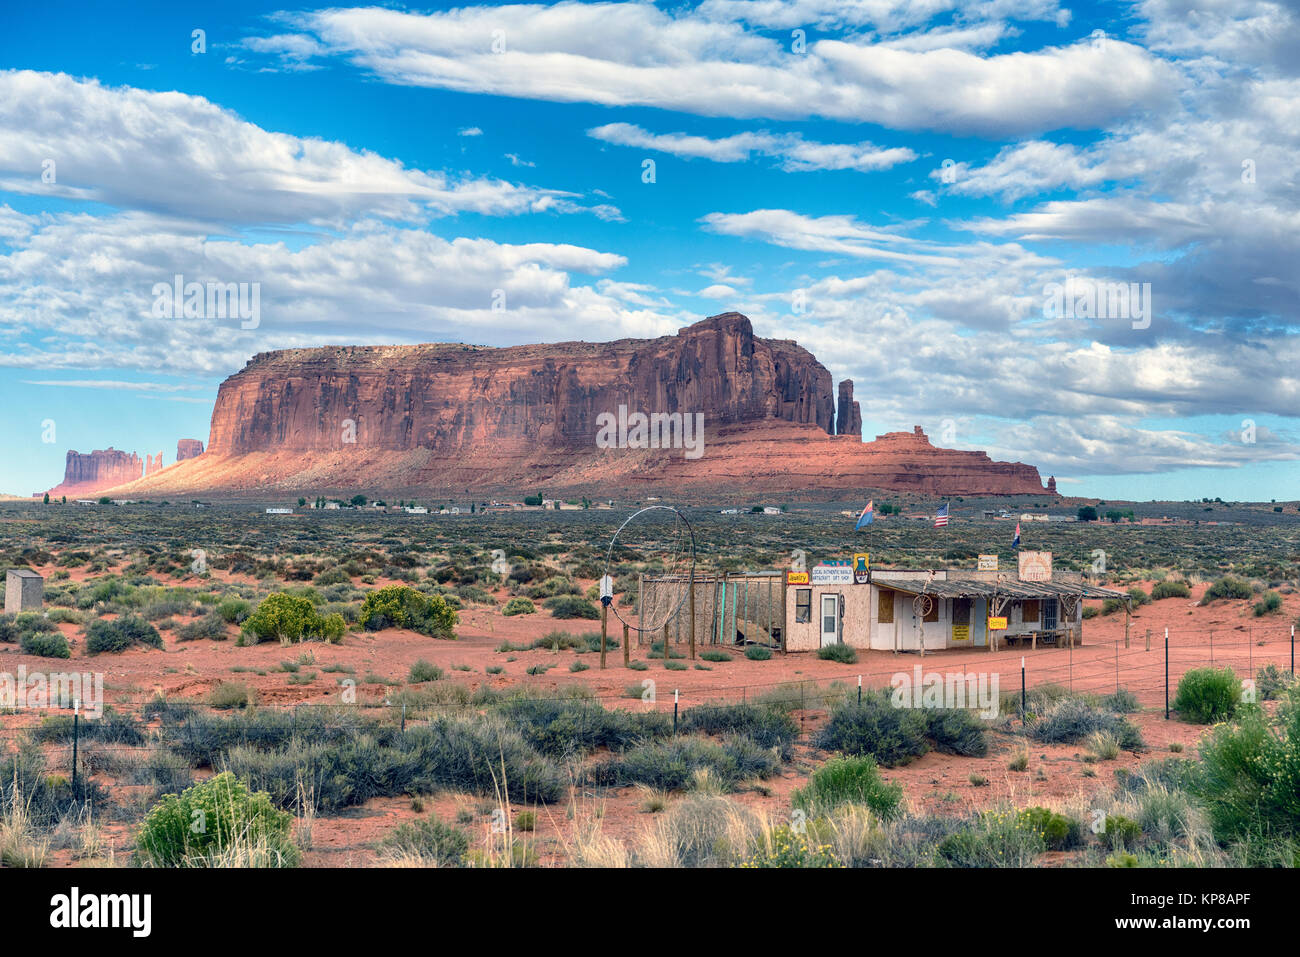 Abbandonato il negozio turistico, nota la grande 'dream catcher' con insediamento Navajo in background. Confine Arizona-Utah, STATI UNITI D'AMERICA Foto Stock